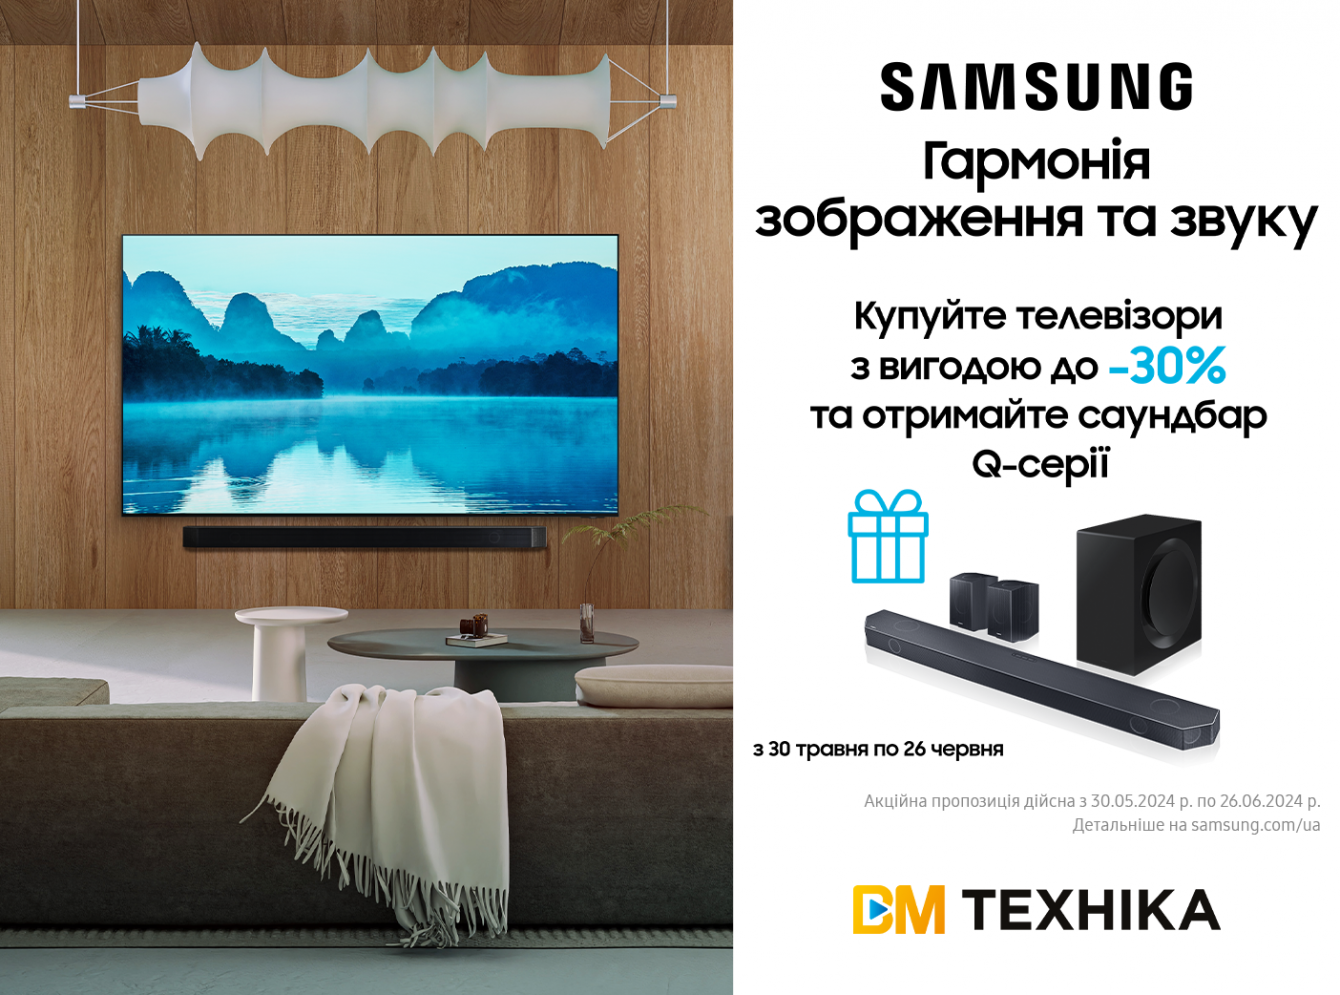 Ідеальна гармонія зображення та звуку або Як купити телевізор від Samsung вигідно